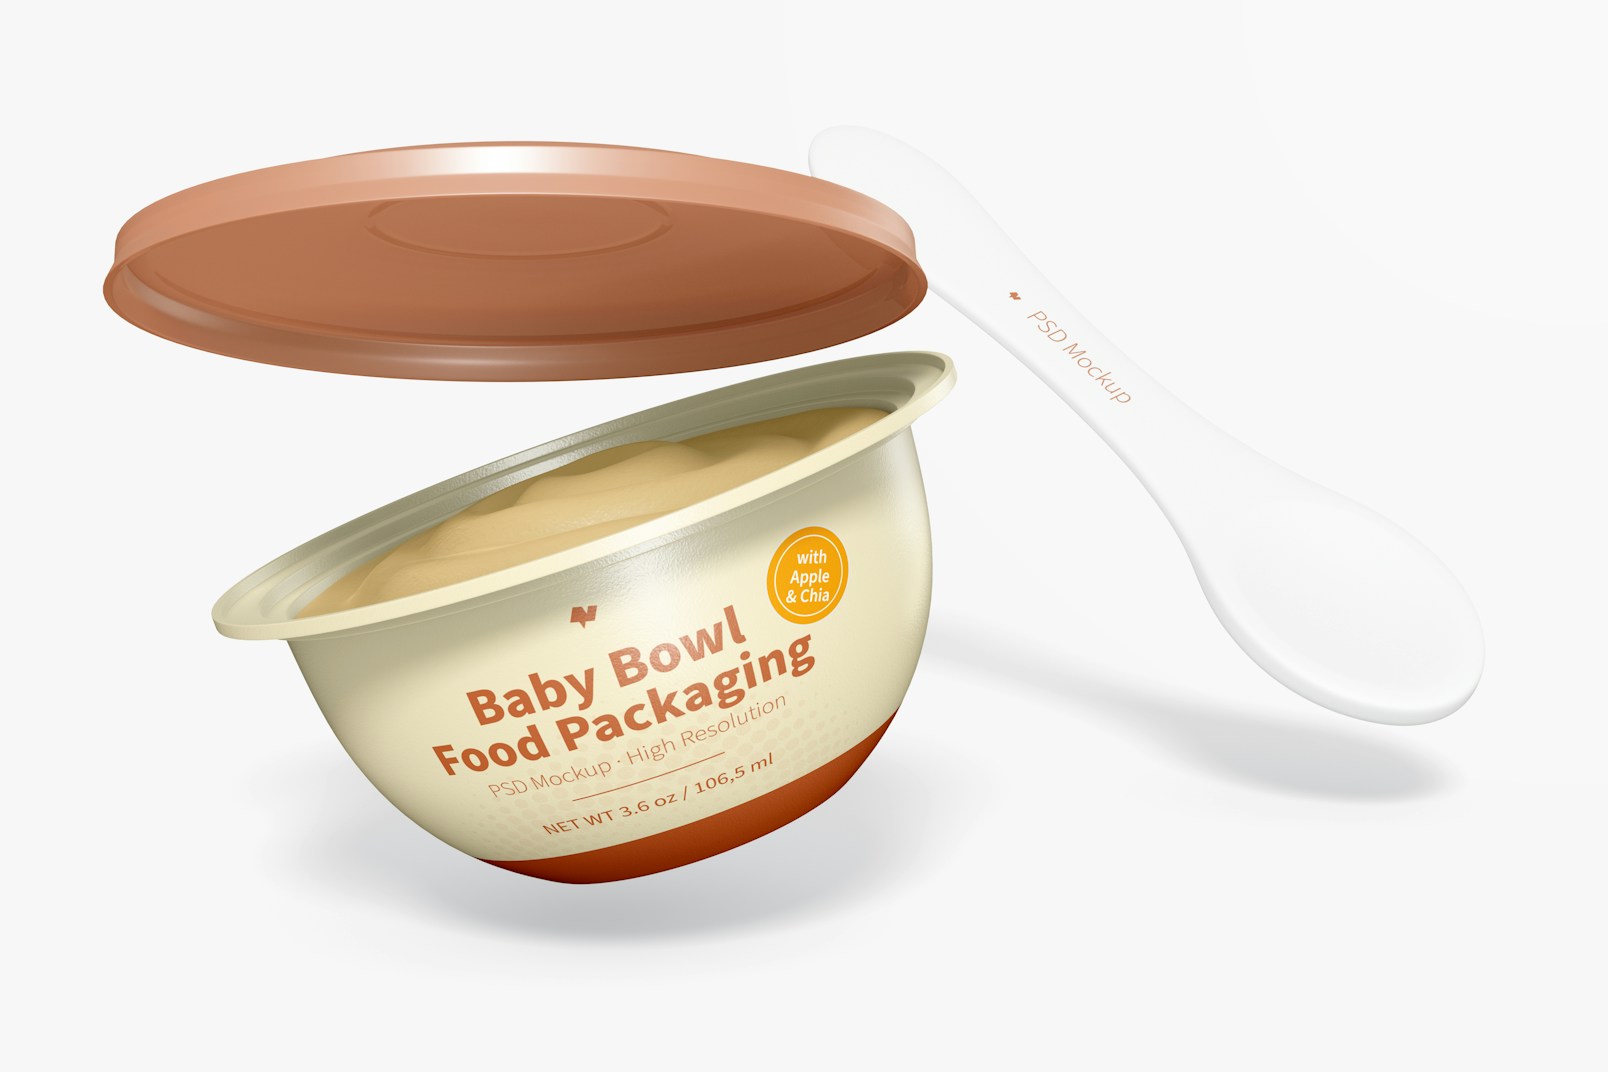 Baby Bowl Food Packaging Mockup, Opened